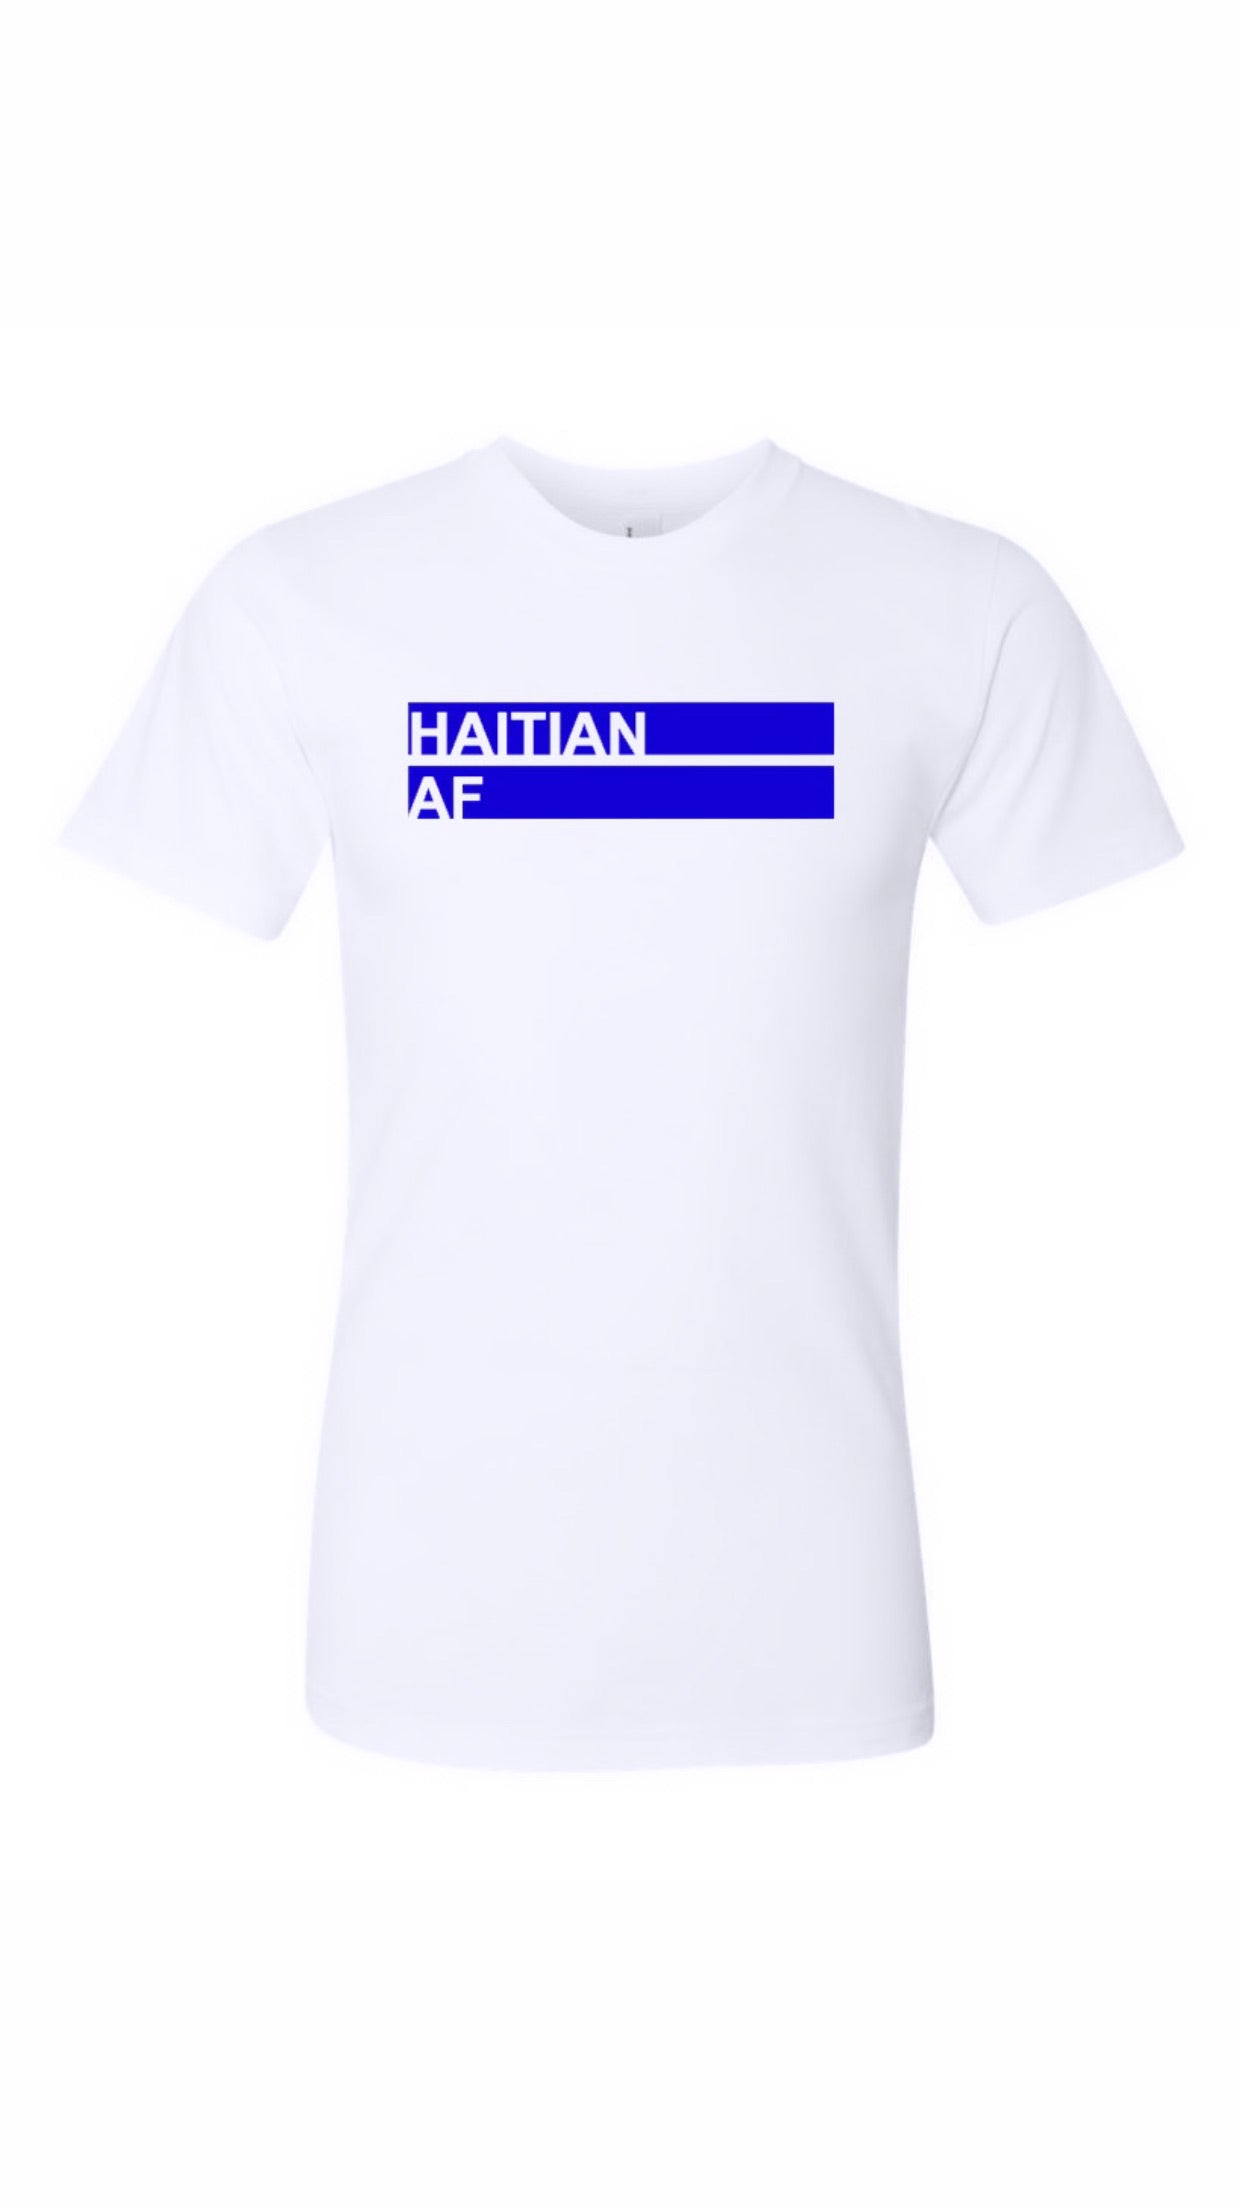 Haitian AF White & Blue T-shirt